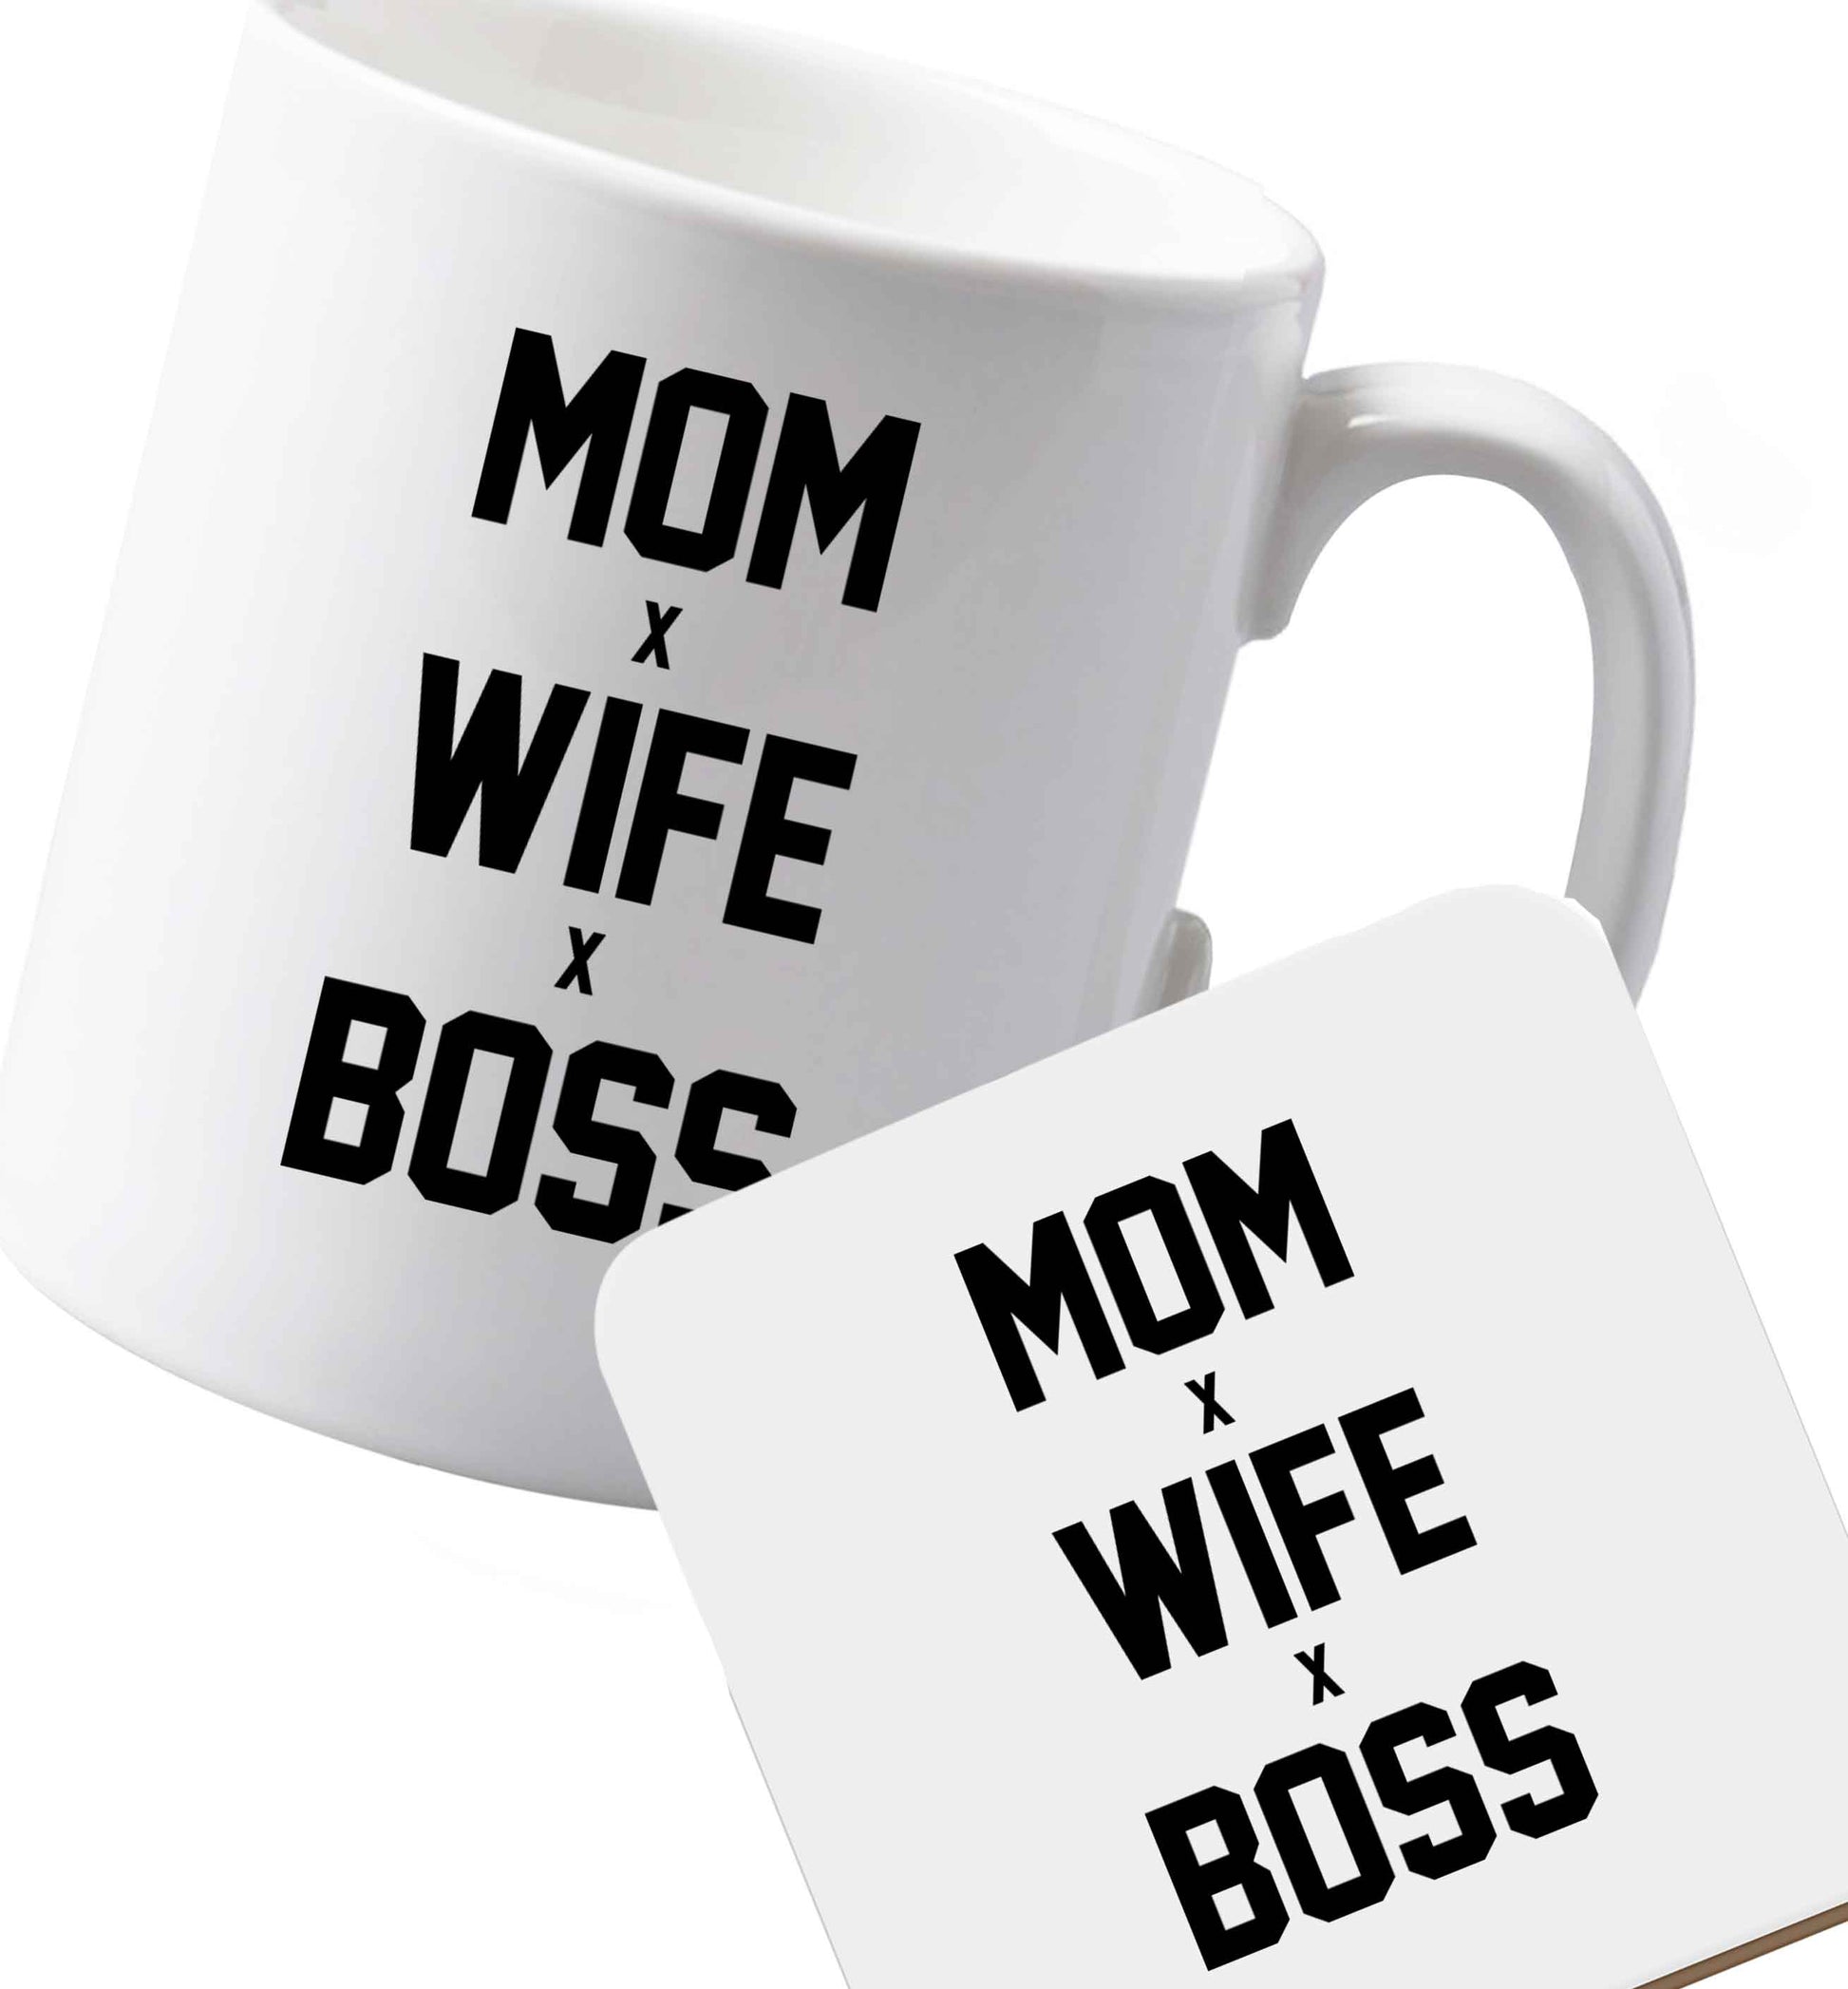 10 oz Ceramic mug and coaster Mum wife boss both sides